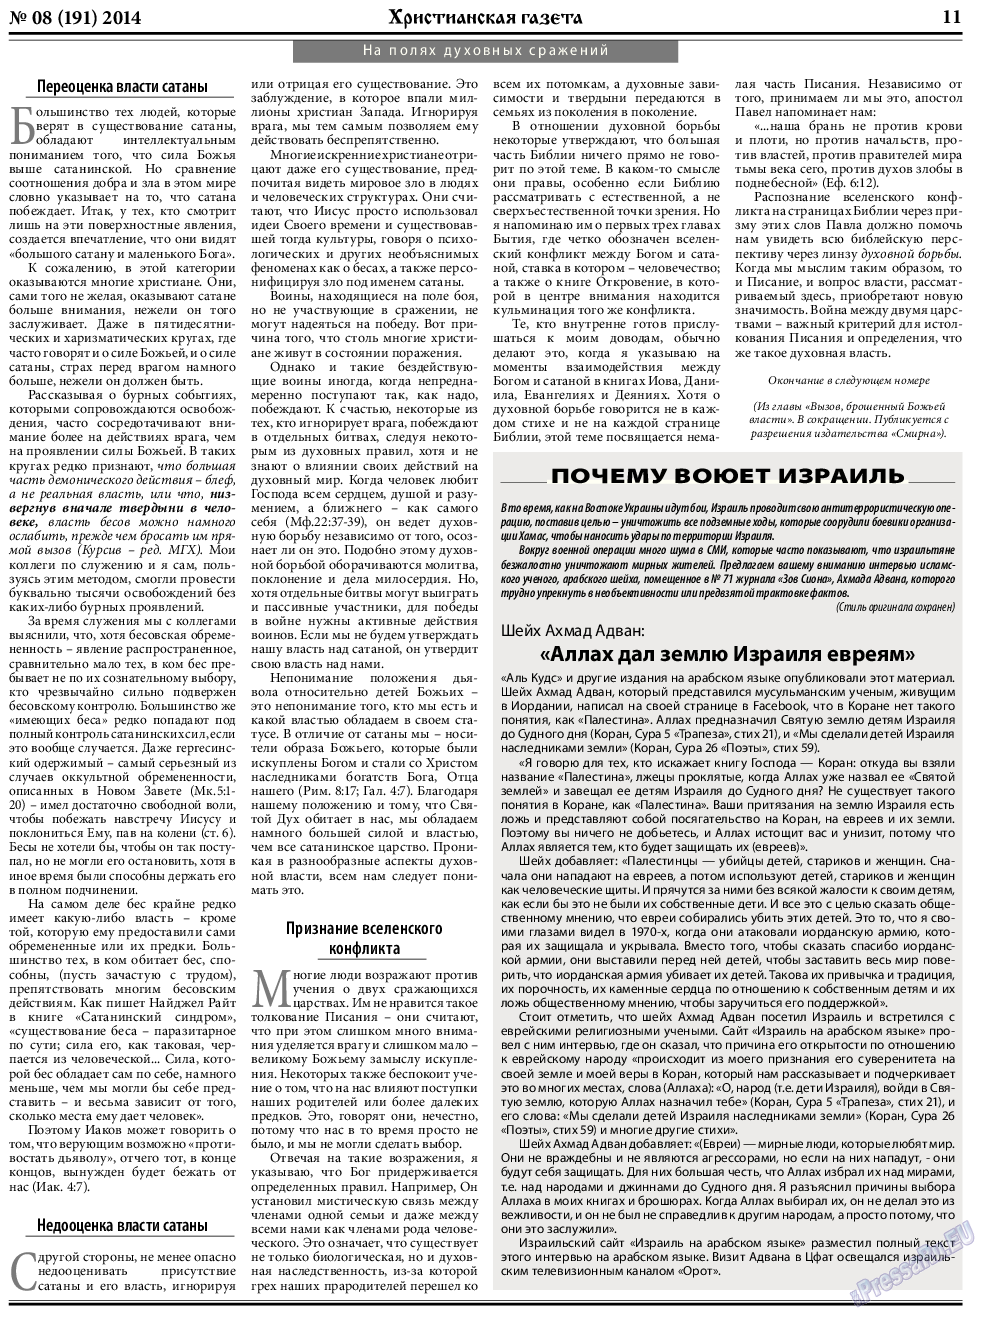 Христианская газета (газета). 2014 год, номер 8, стр. 11